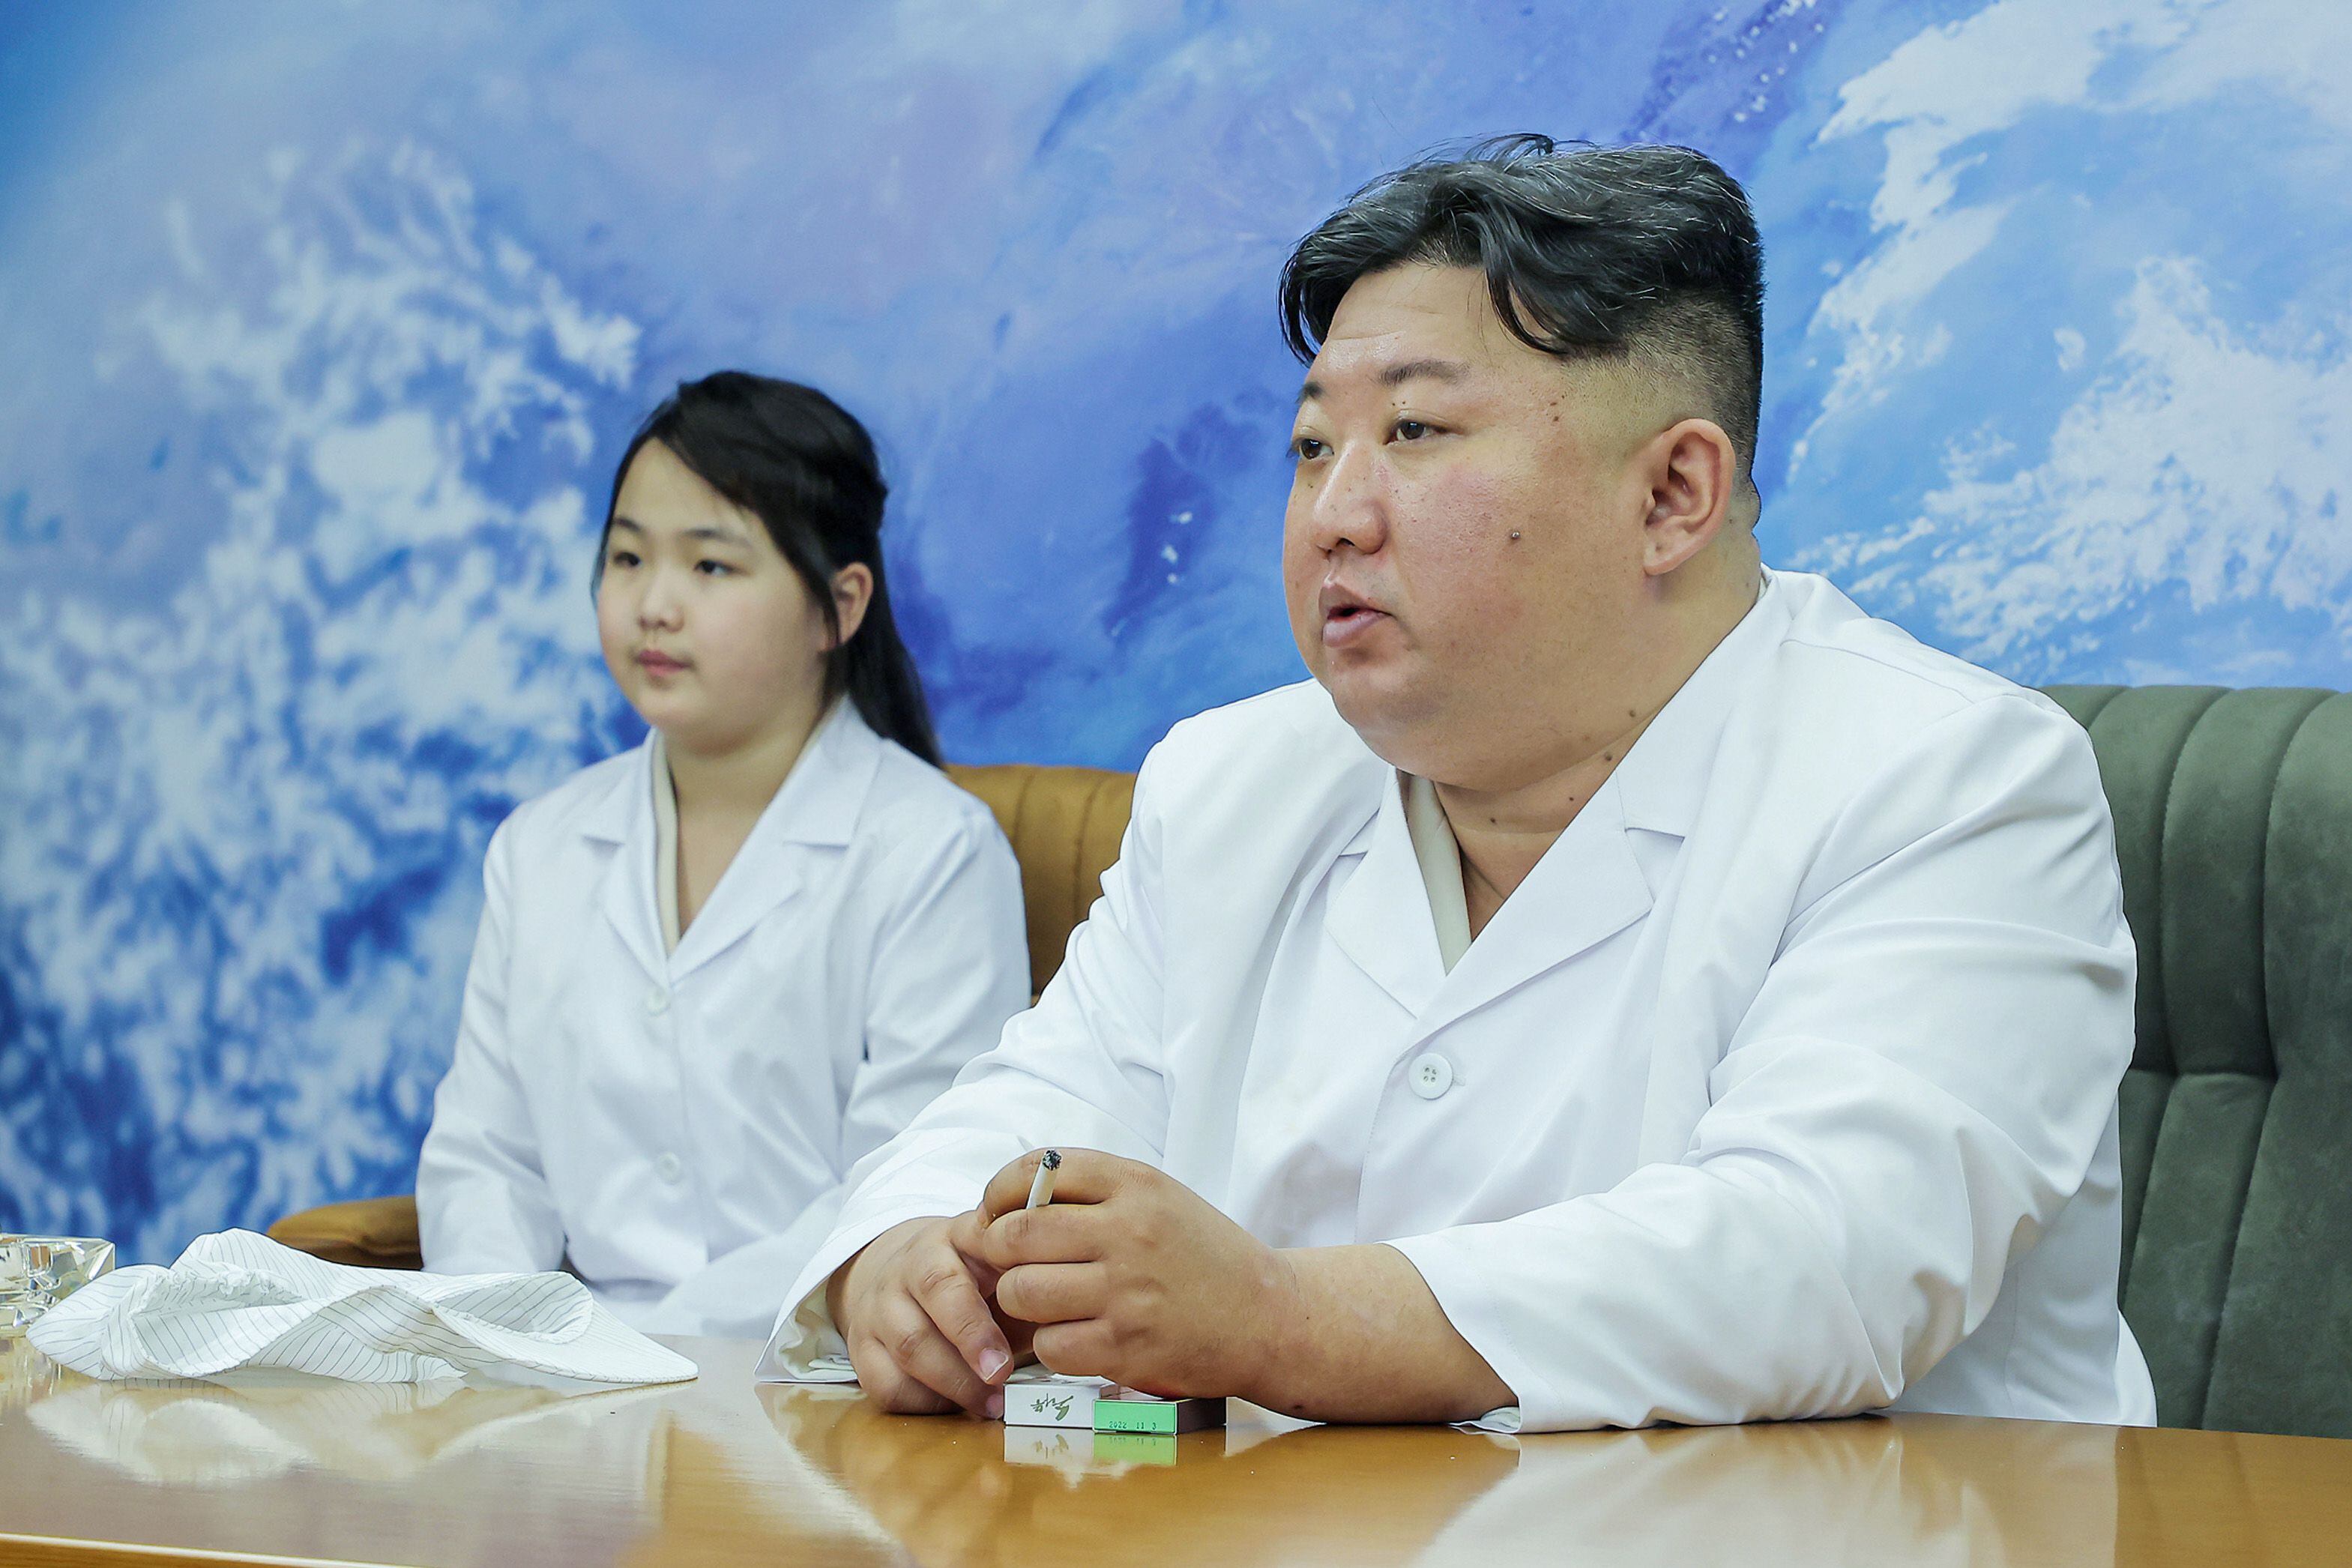 Corea del Norte lanza un satélite de vigilancia y pone en alerta a Japón (Kcna/Dpa)
